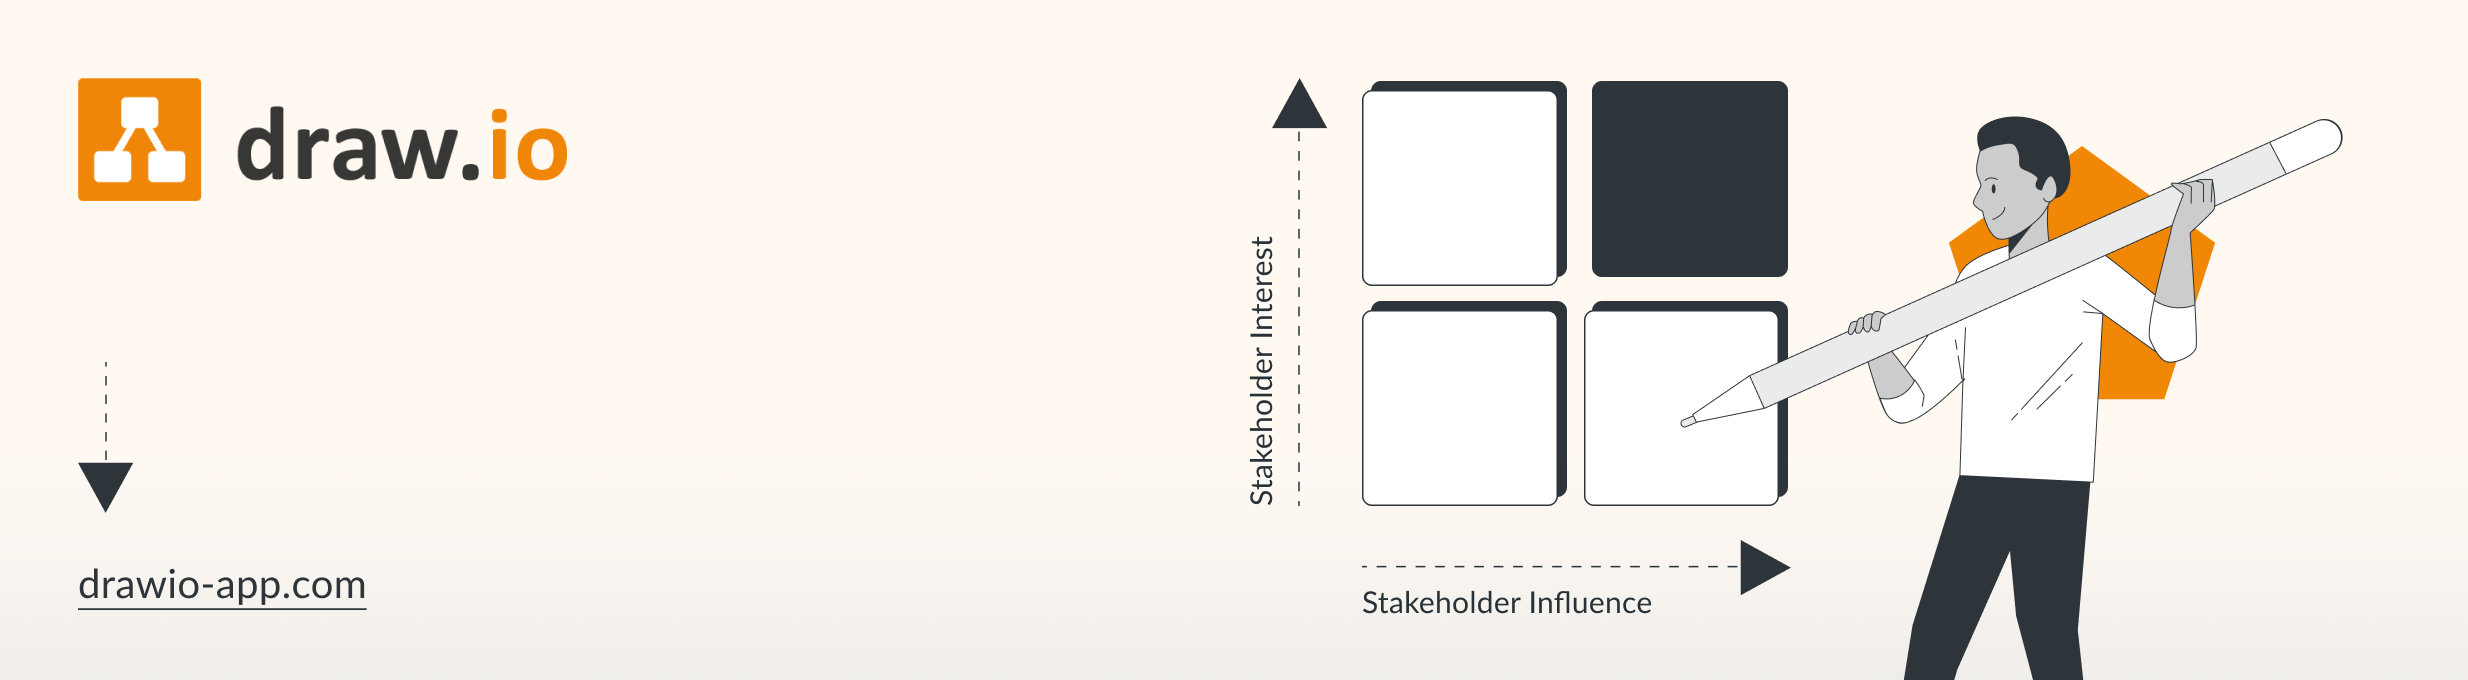 Stakeholder-Karten mit draw.io – Visualisierung kann helfen - Header